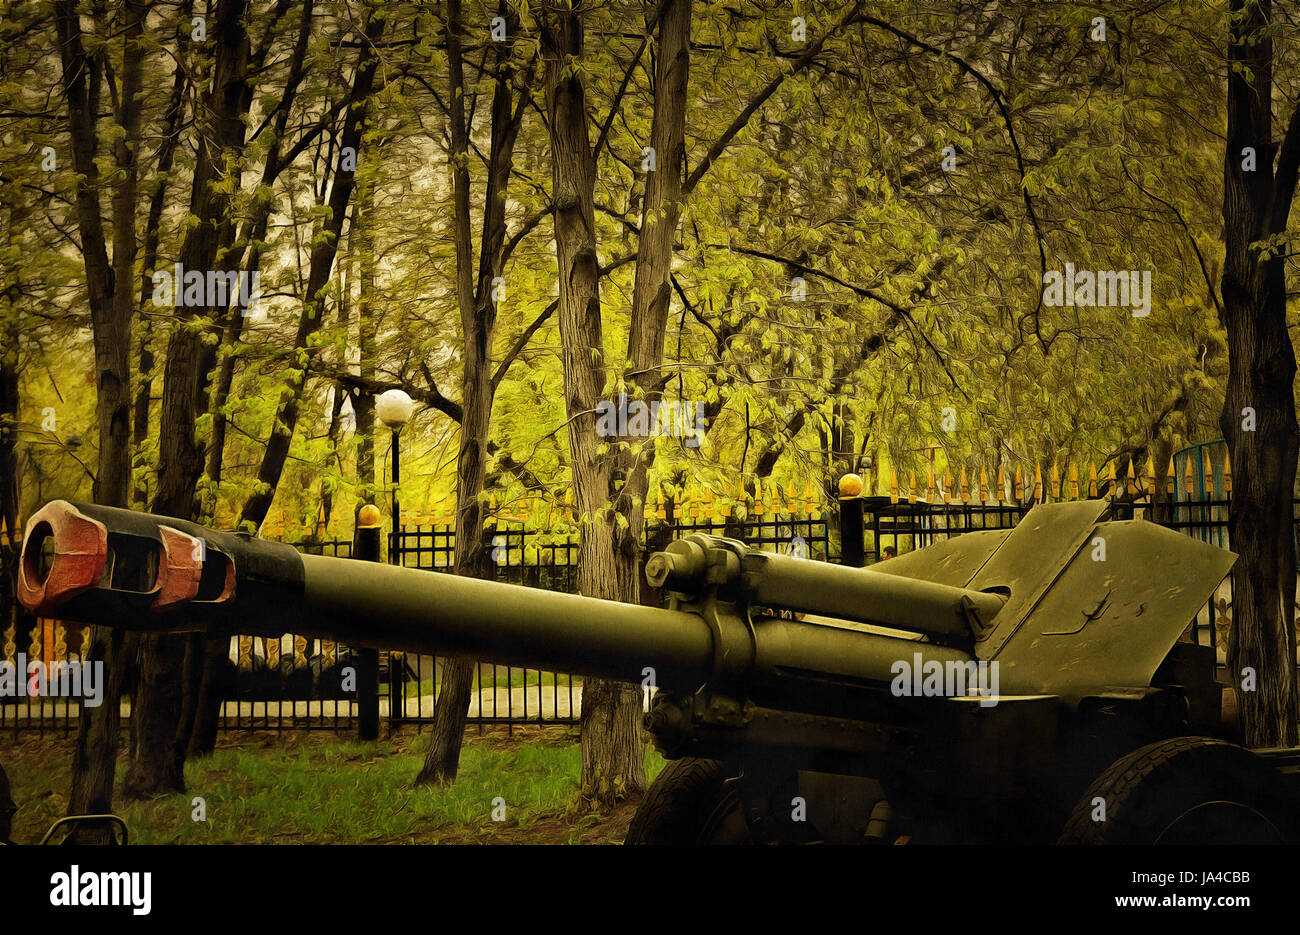 La artillería pesada de ilustraciones Foto de stock